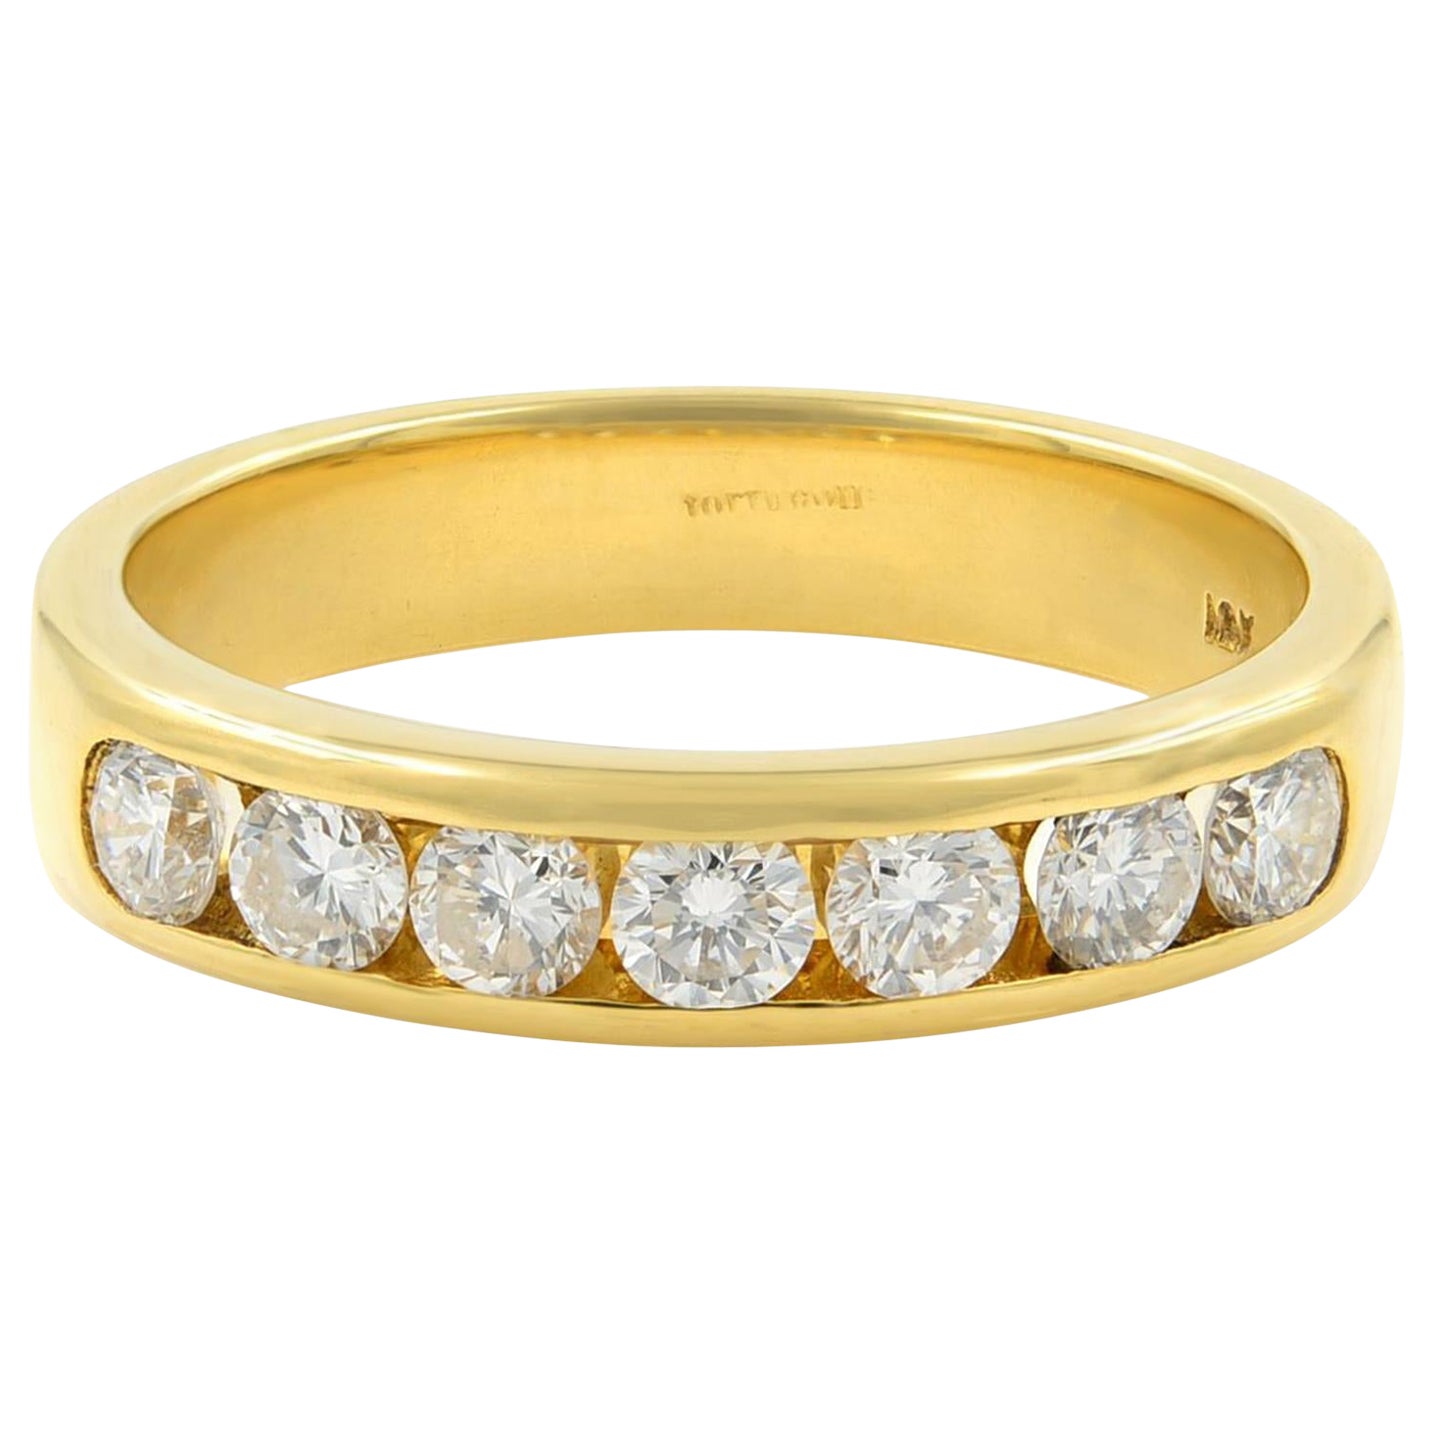 Runder Diamant-Hochzeitsring mit Kanalfassung, 18 Karat Gelbgold 0,50 Gesamtkaratgewicht